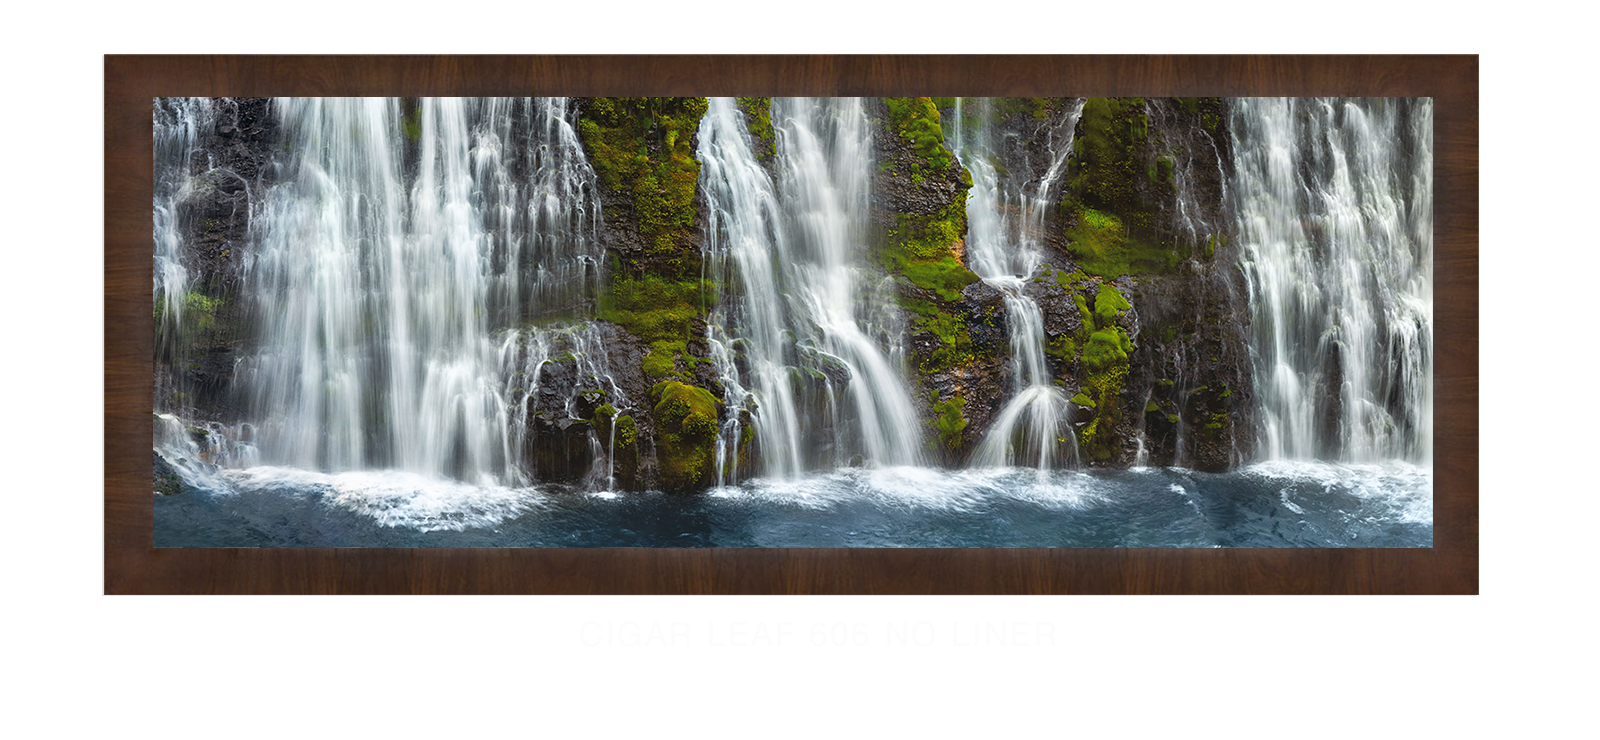 22_Cigar Leaf 606 w_No Liner